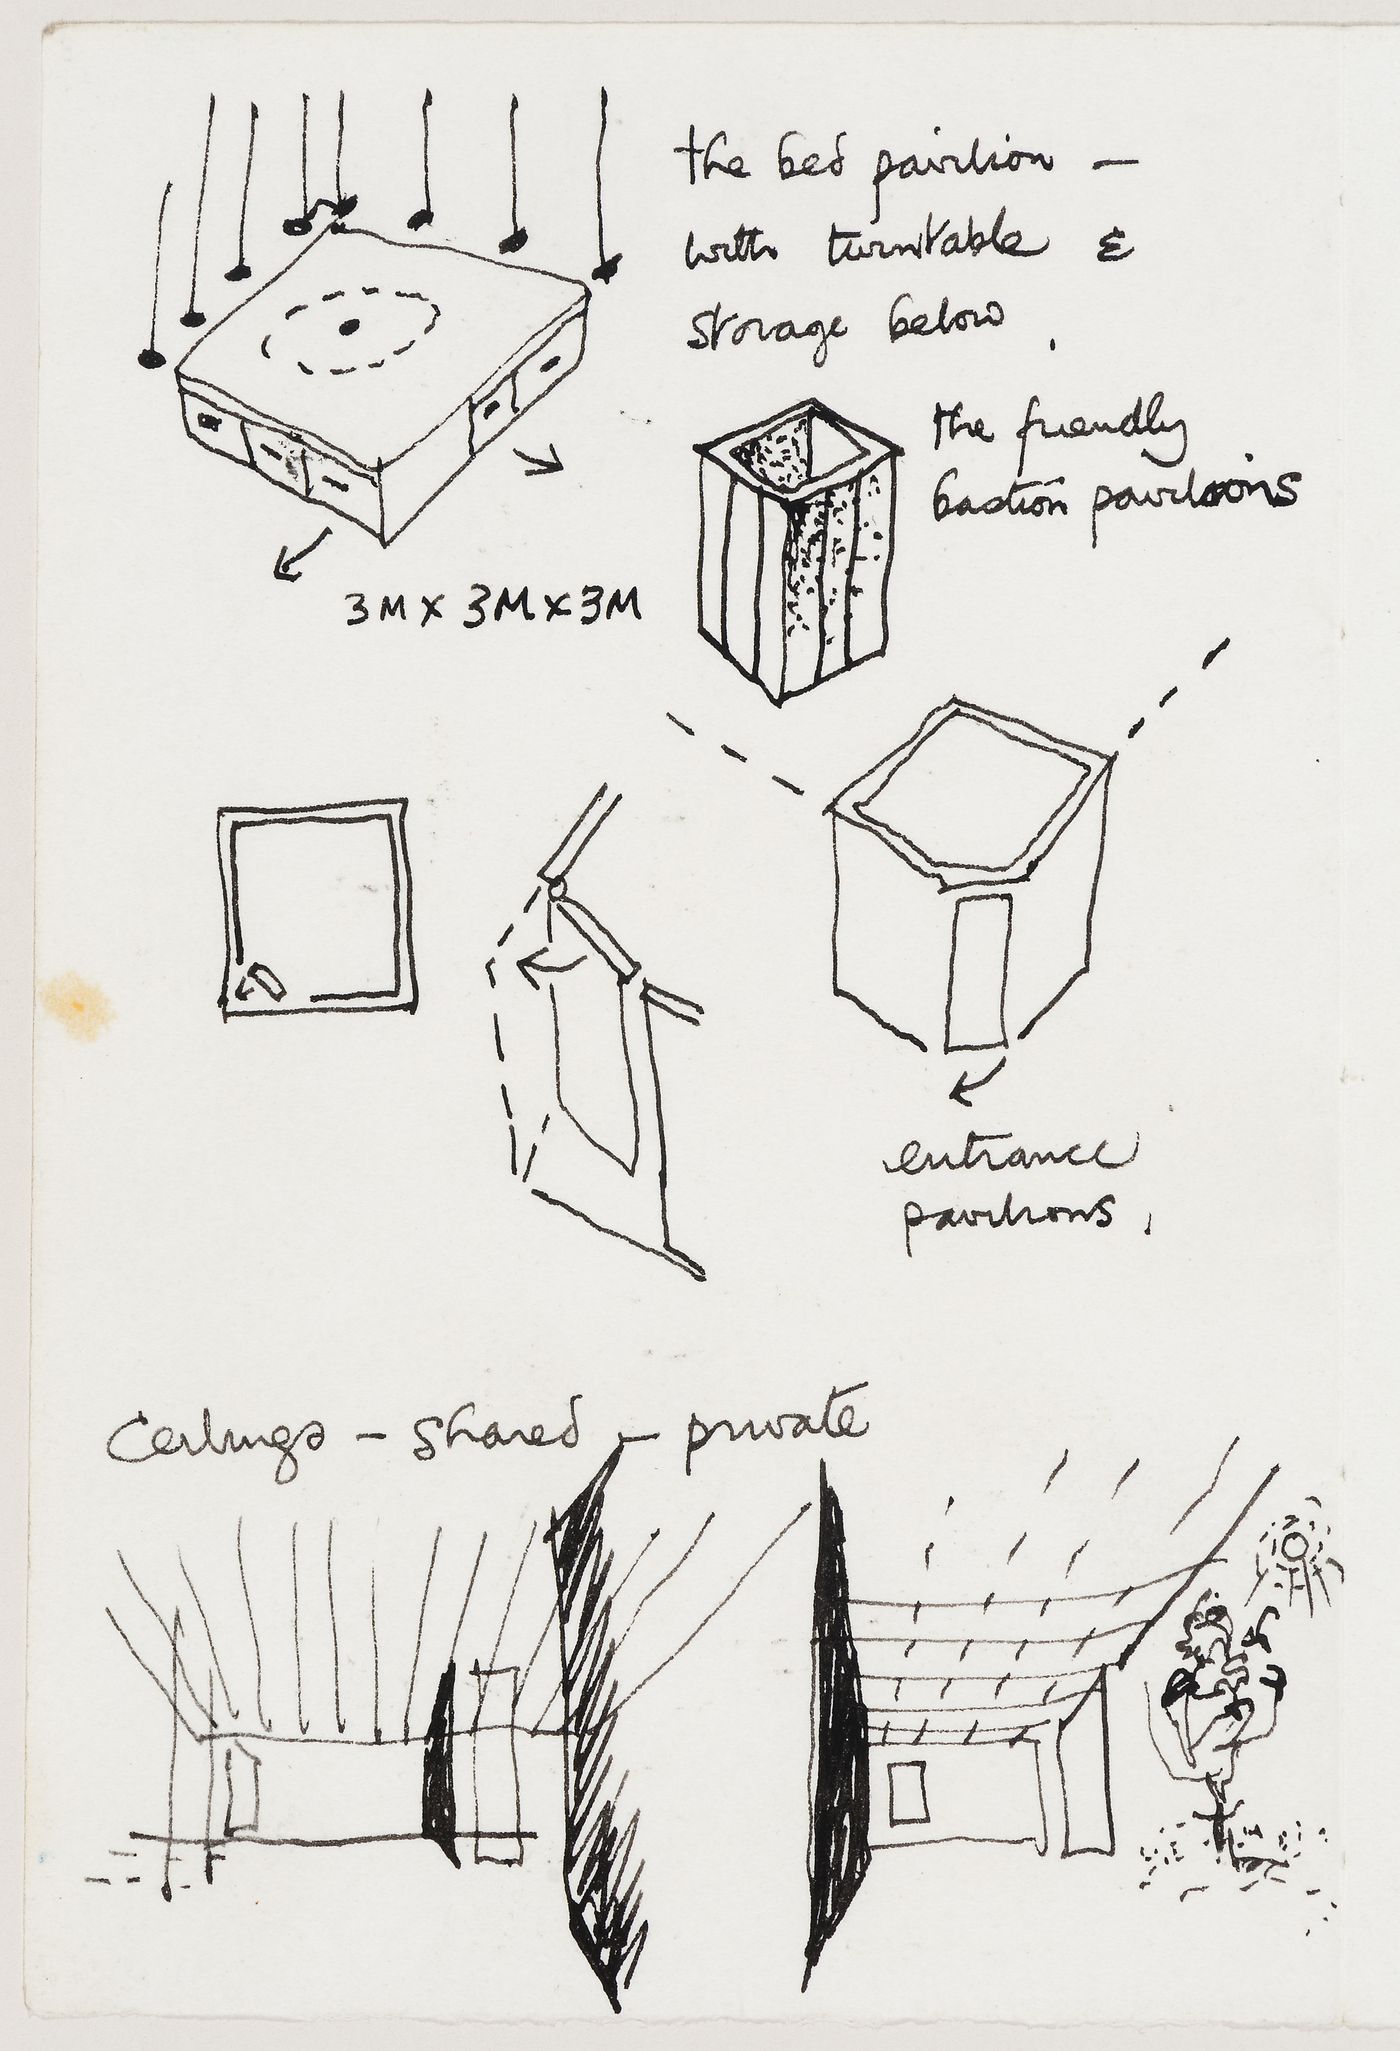 Perthut House: conceptual sketches for a "bed pavilion", "friendly bastion pavilions", entrance pavilions and ceilings